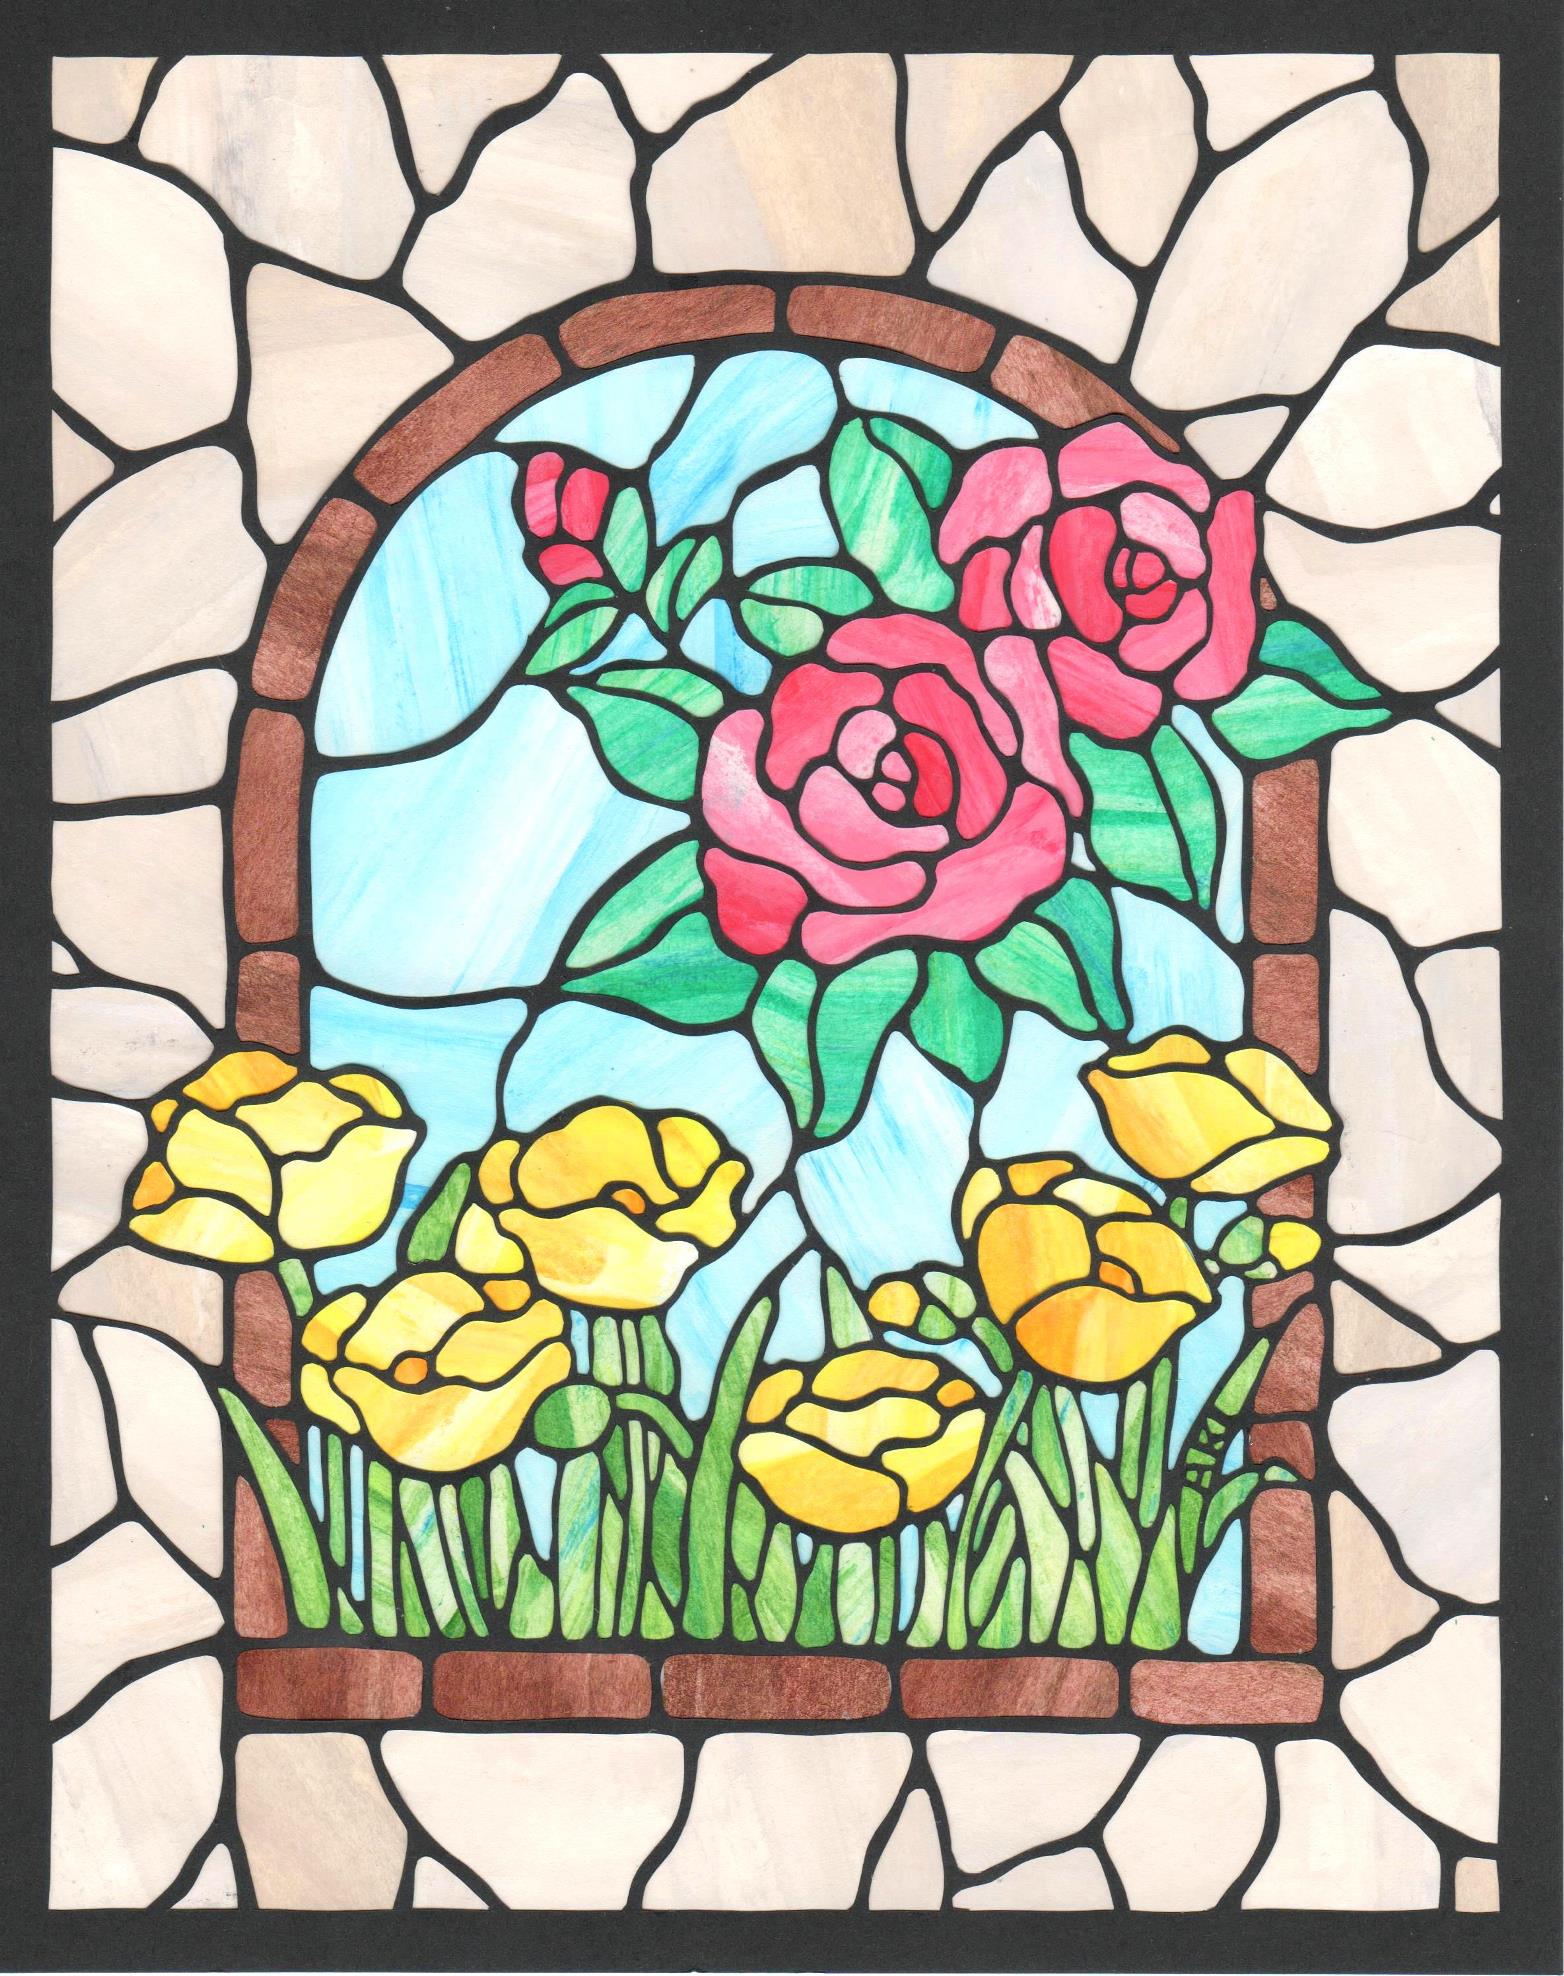 「ステンドグラスのお花」
25.4cm x 20.2cm